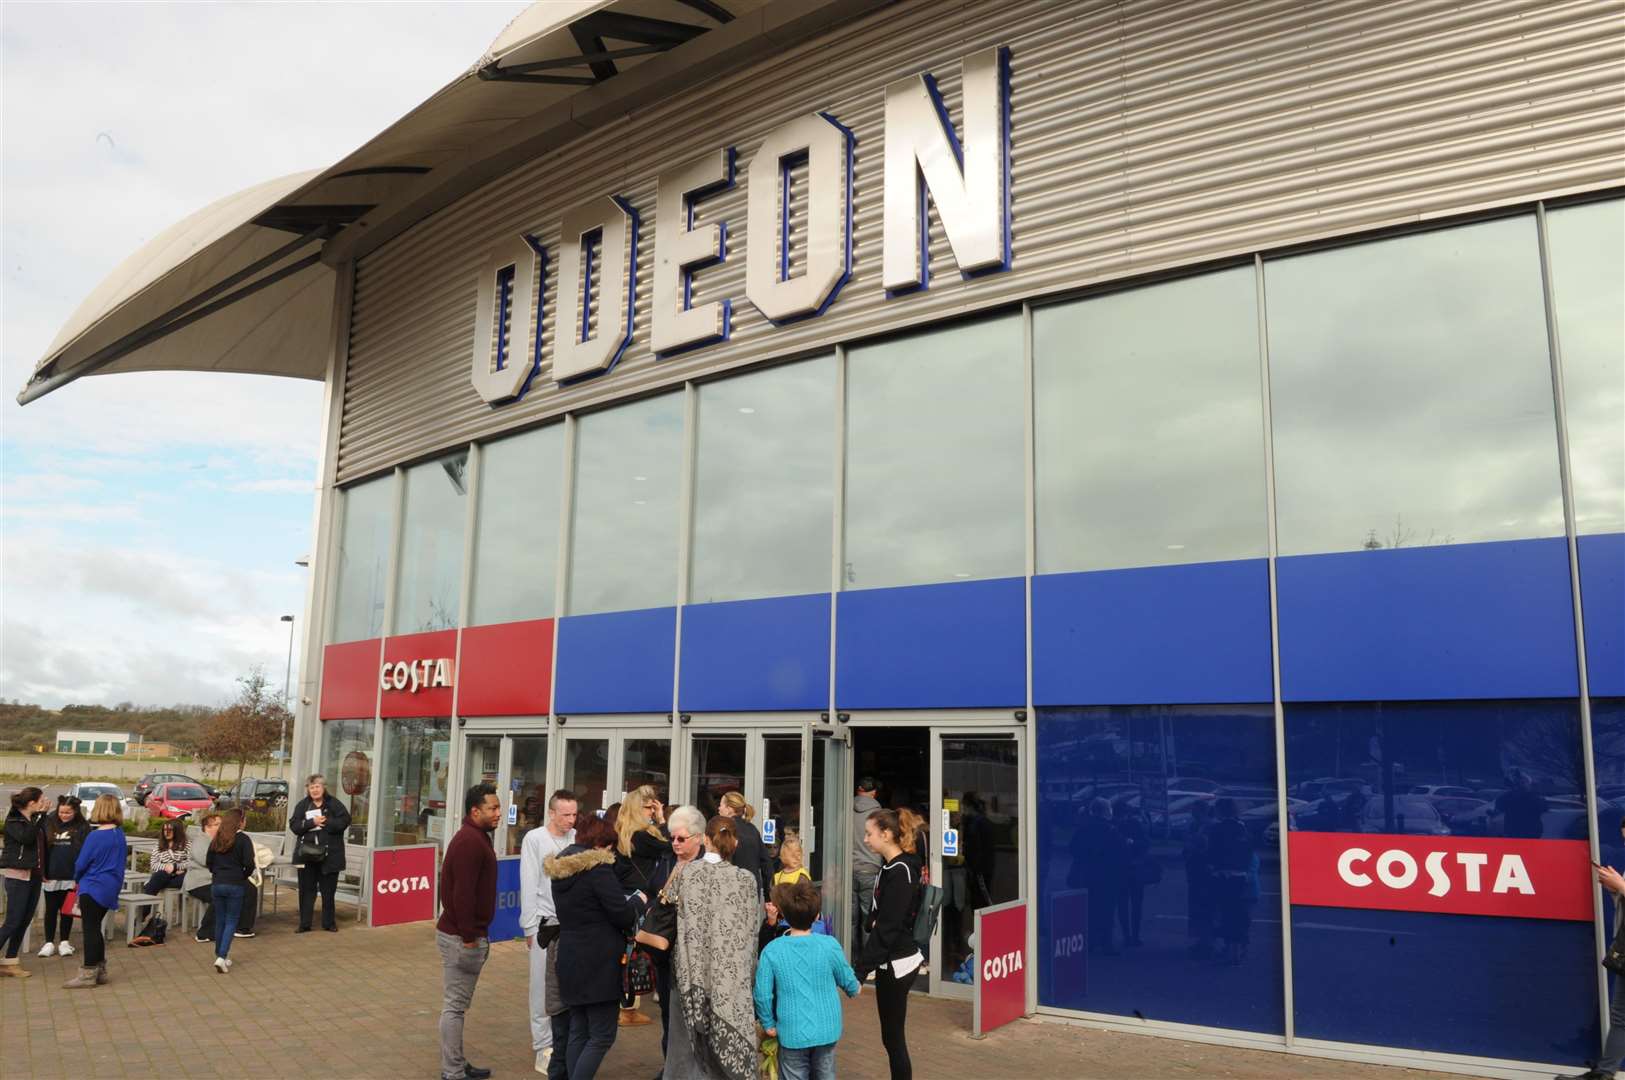 Odeon Cinema, Levathian Way, Chatham